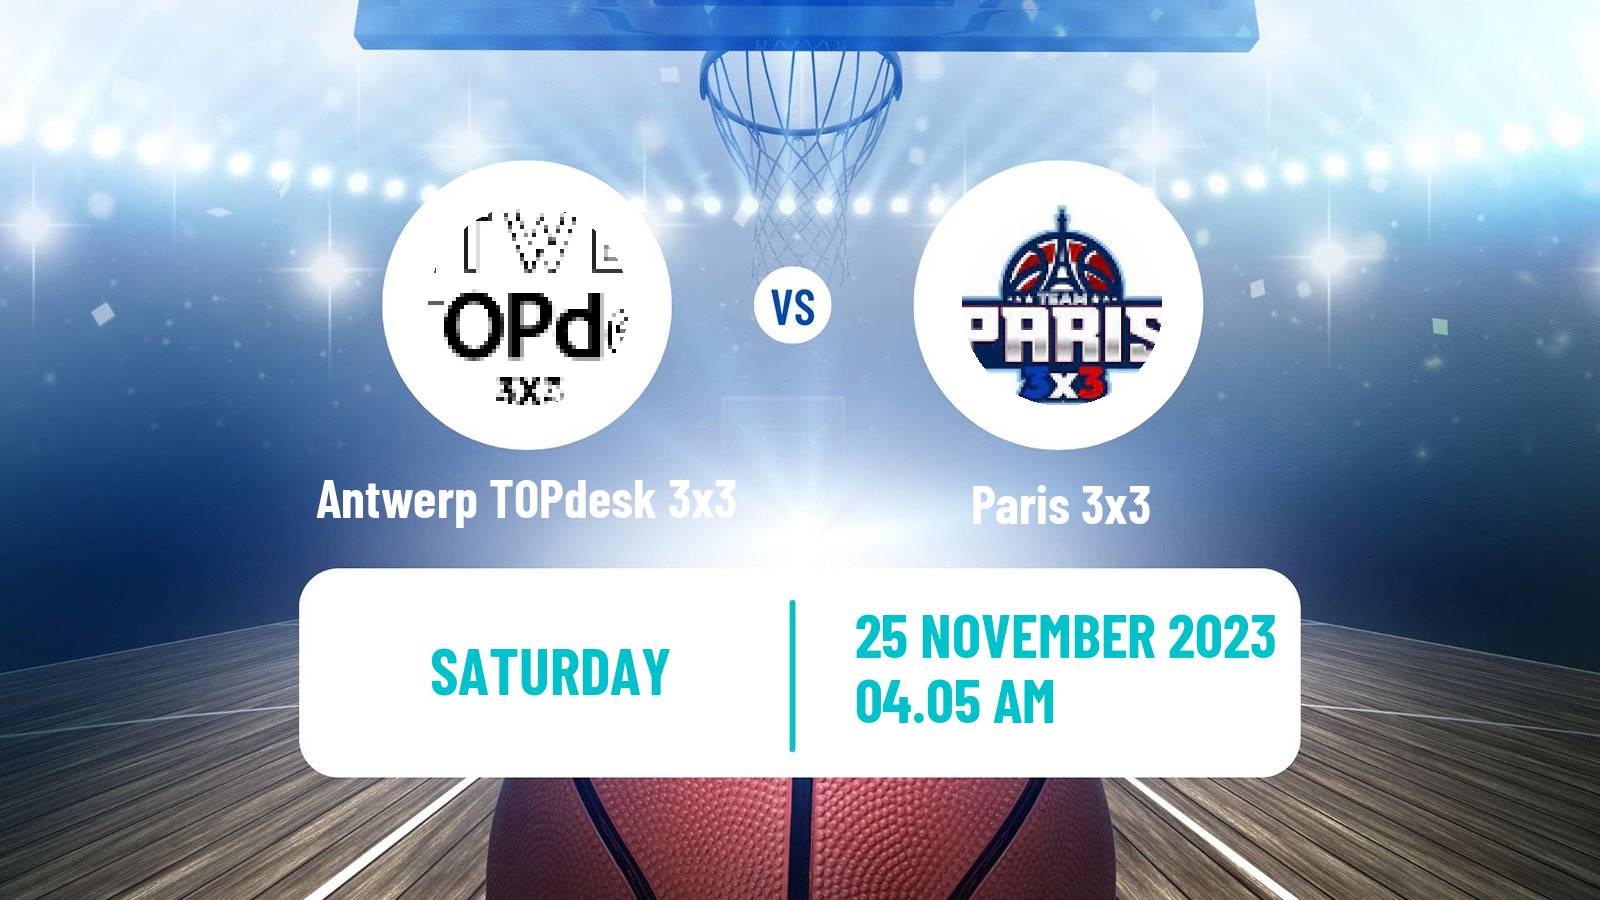 Basketball World Tour Hong Kong 3x3 Antwerp TOPdesk 3x3 - Paris 3x3